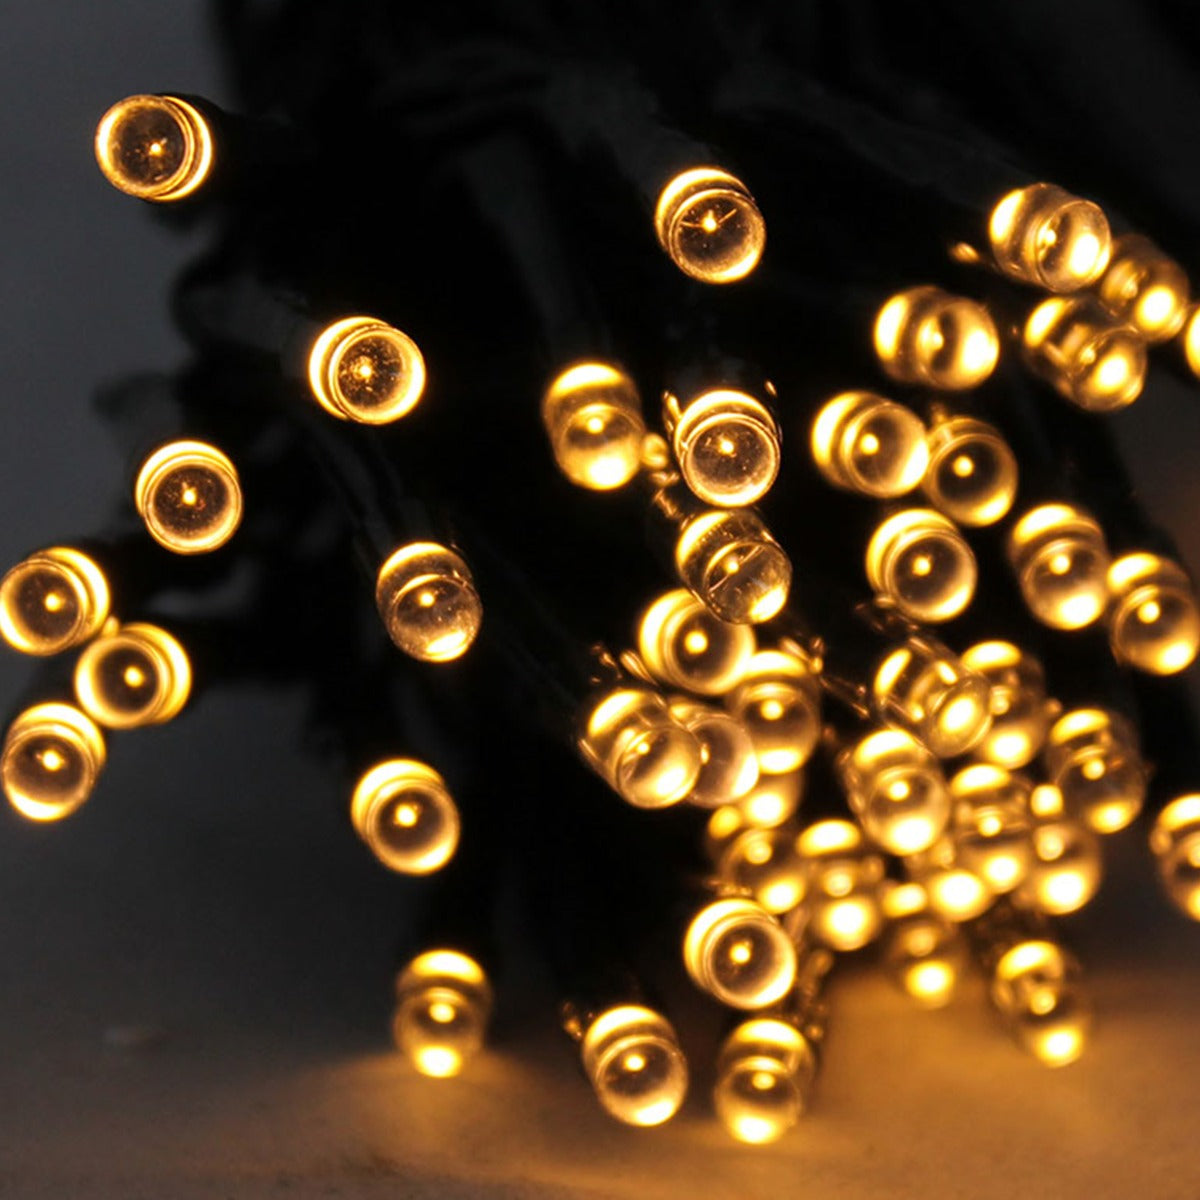 LED Lichterkette mit 96 Leuchten warmweiß Batteriebetrieb Timerfunktion Weihnachtsbeleuchtung für Innen